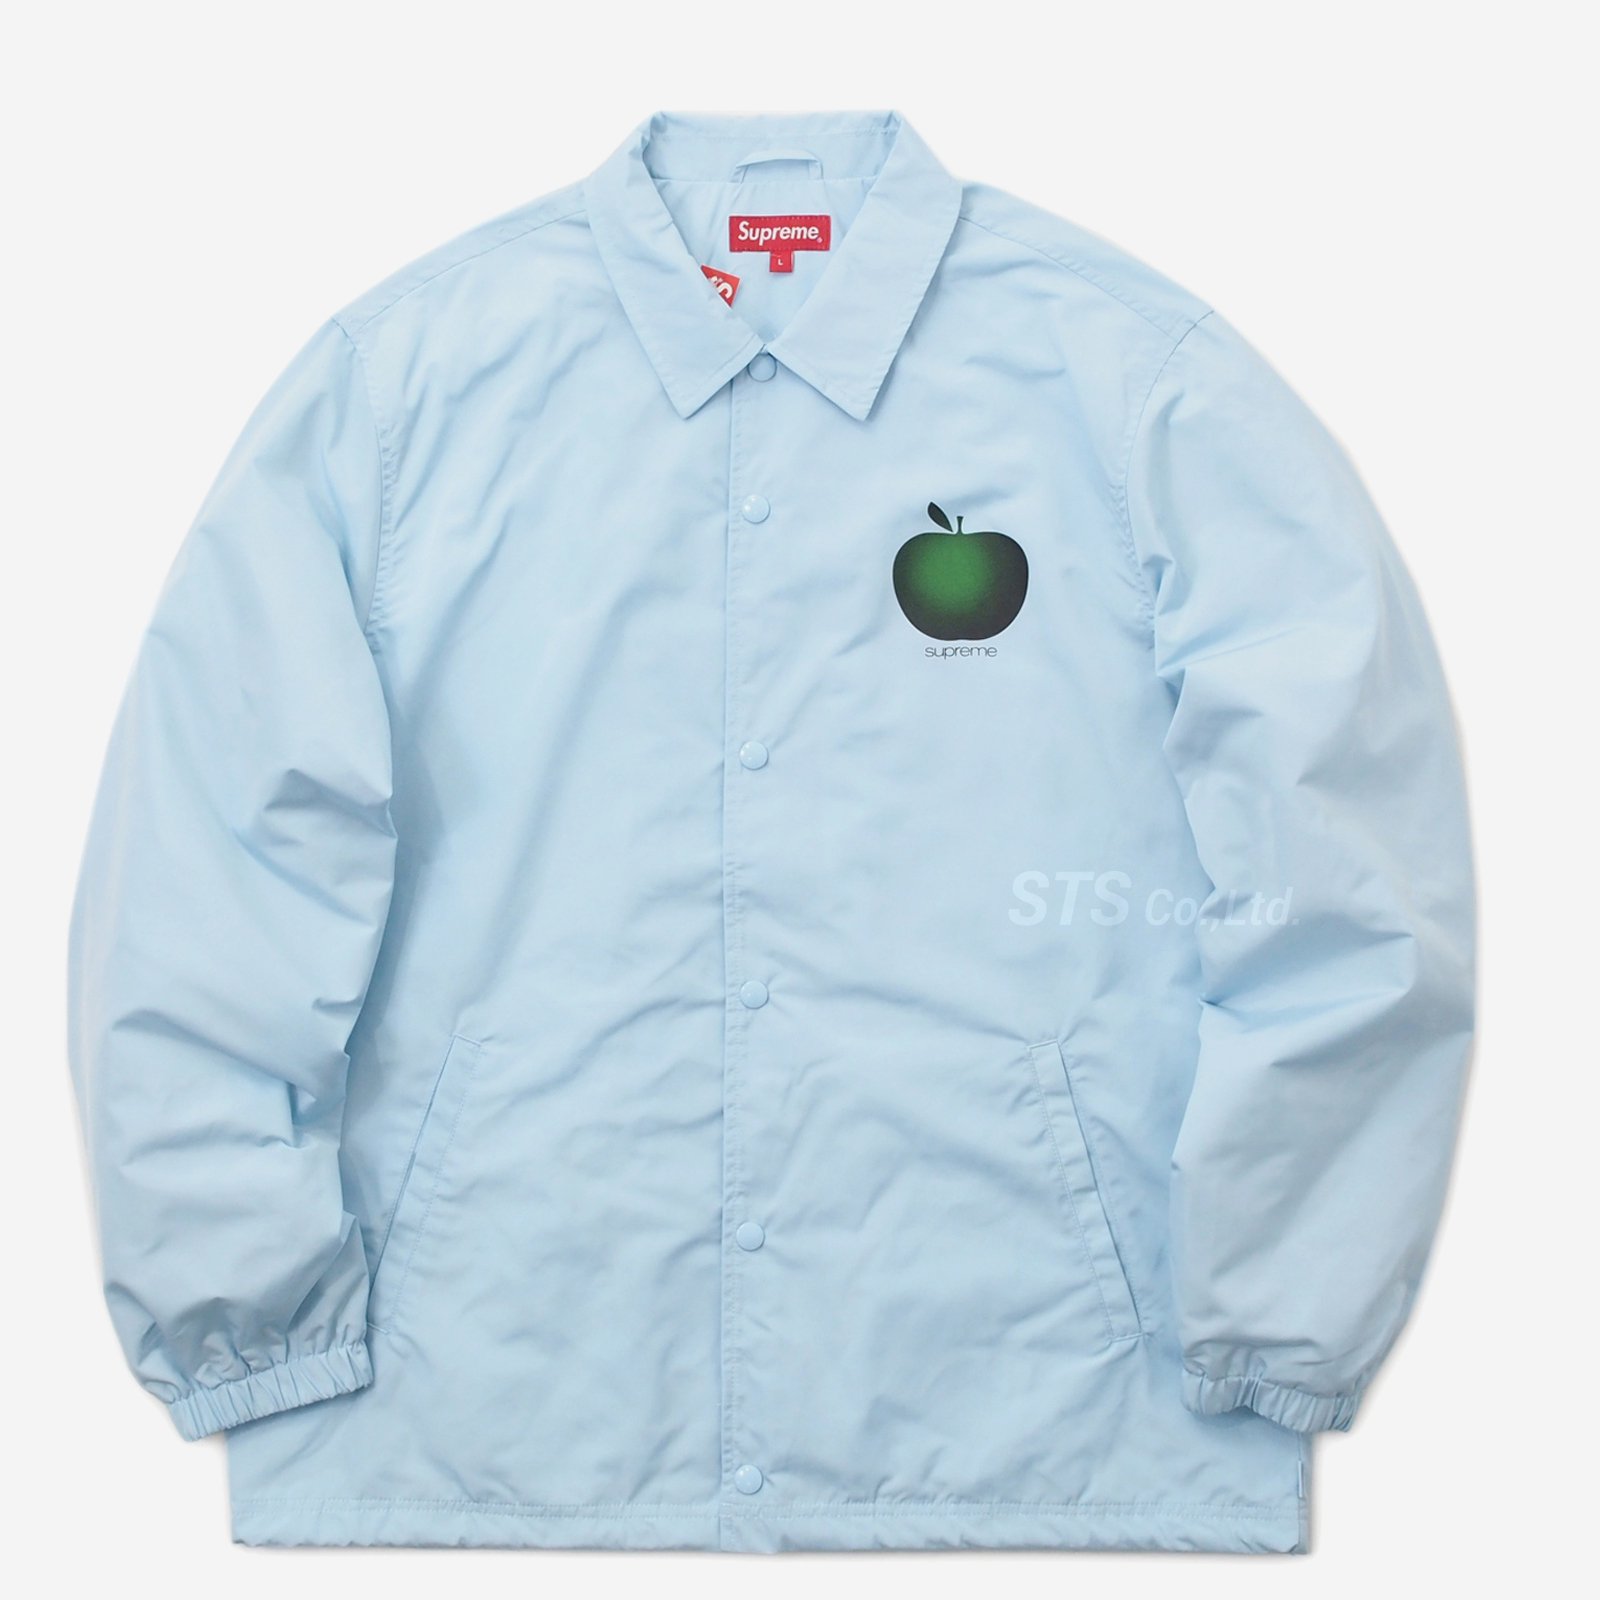 Supreme - Apple Coaches Jacket - UG.SHAFT